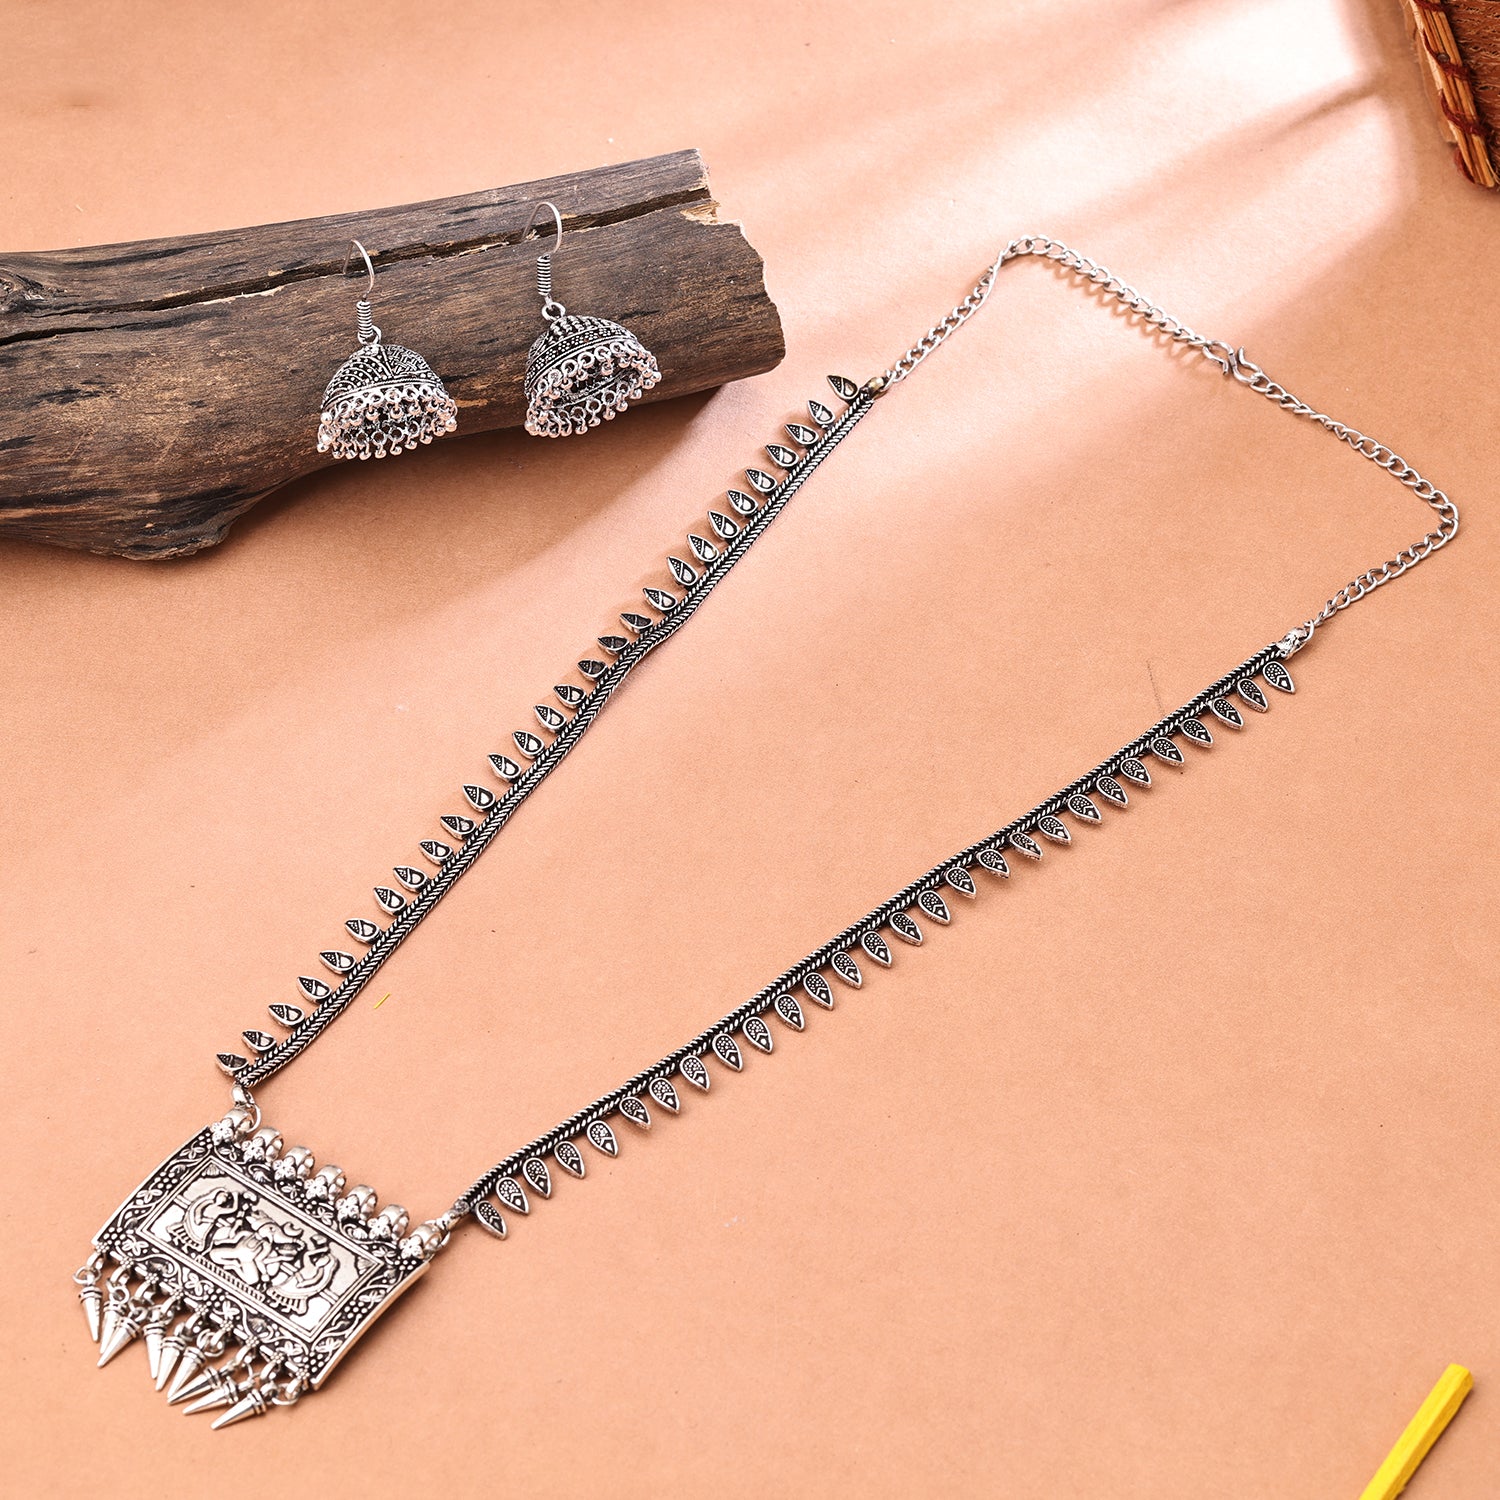 Buy Lock of Heart Pendant Necklace Online in India | Zariin